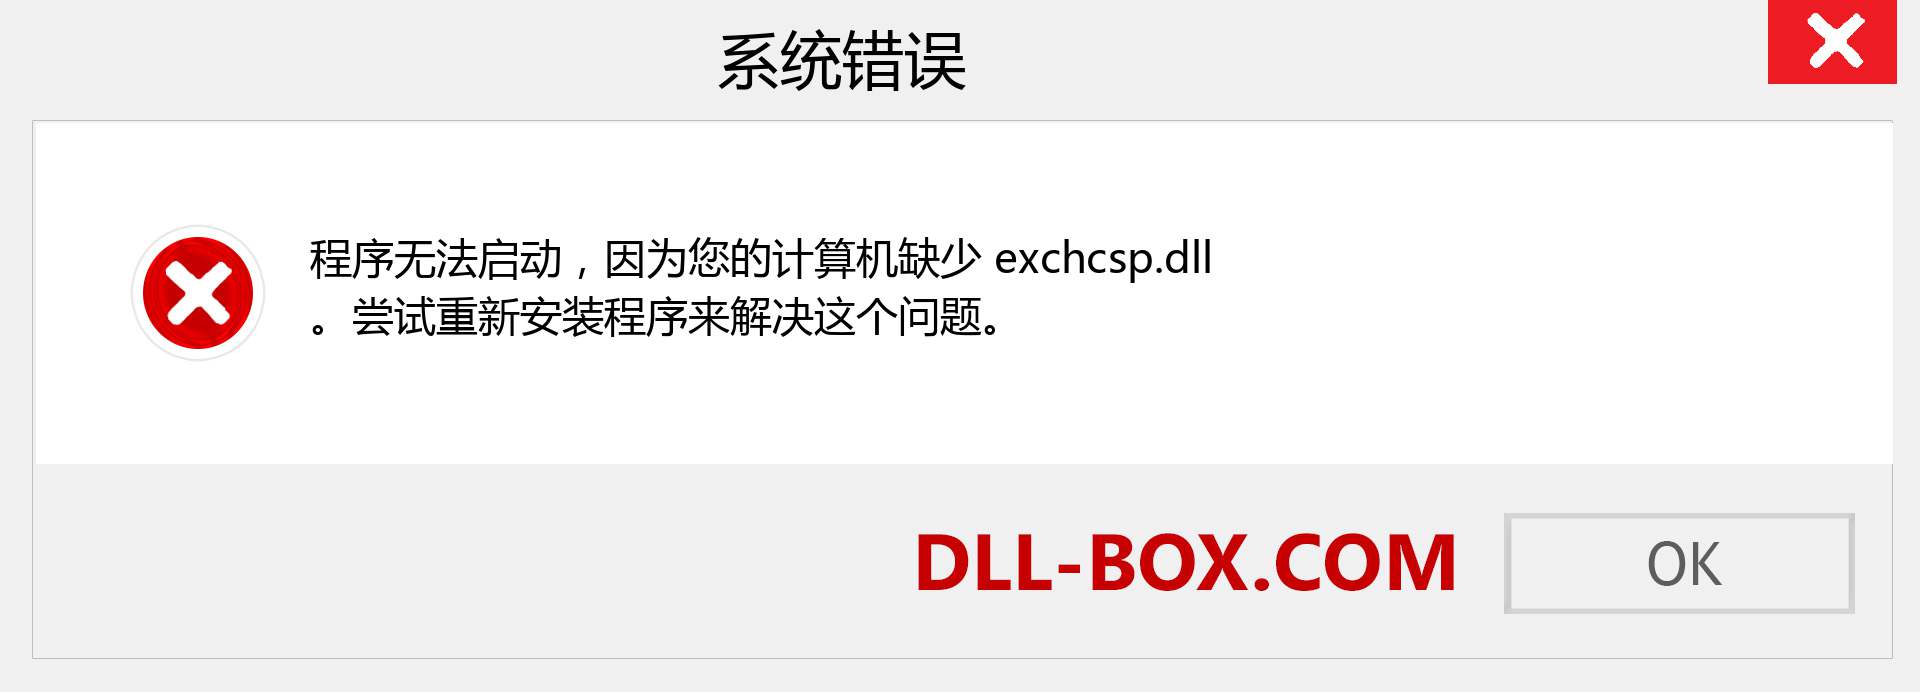 exchcsp.dll 文件丢失？。 适用于 Windows 7、8、10 的下载 - 修复 Windows、照片、图像上的 exchcsp dll 丢失错误